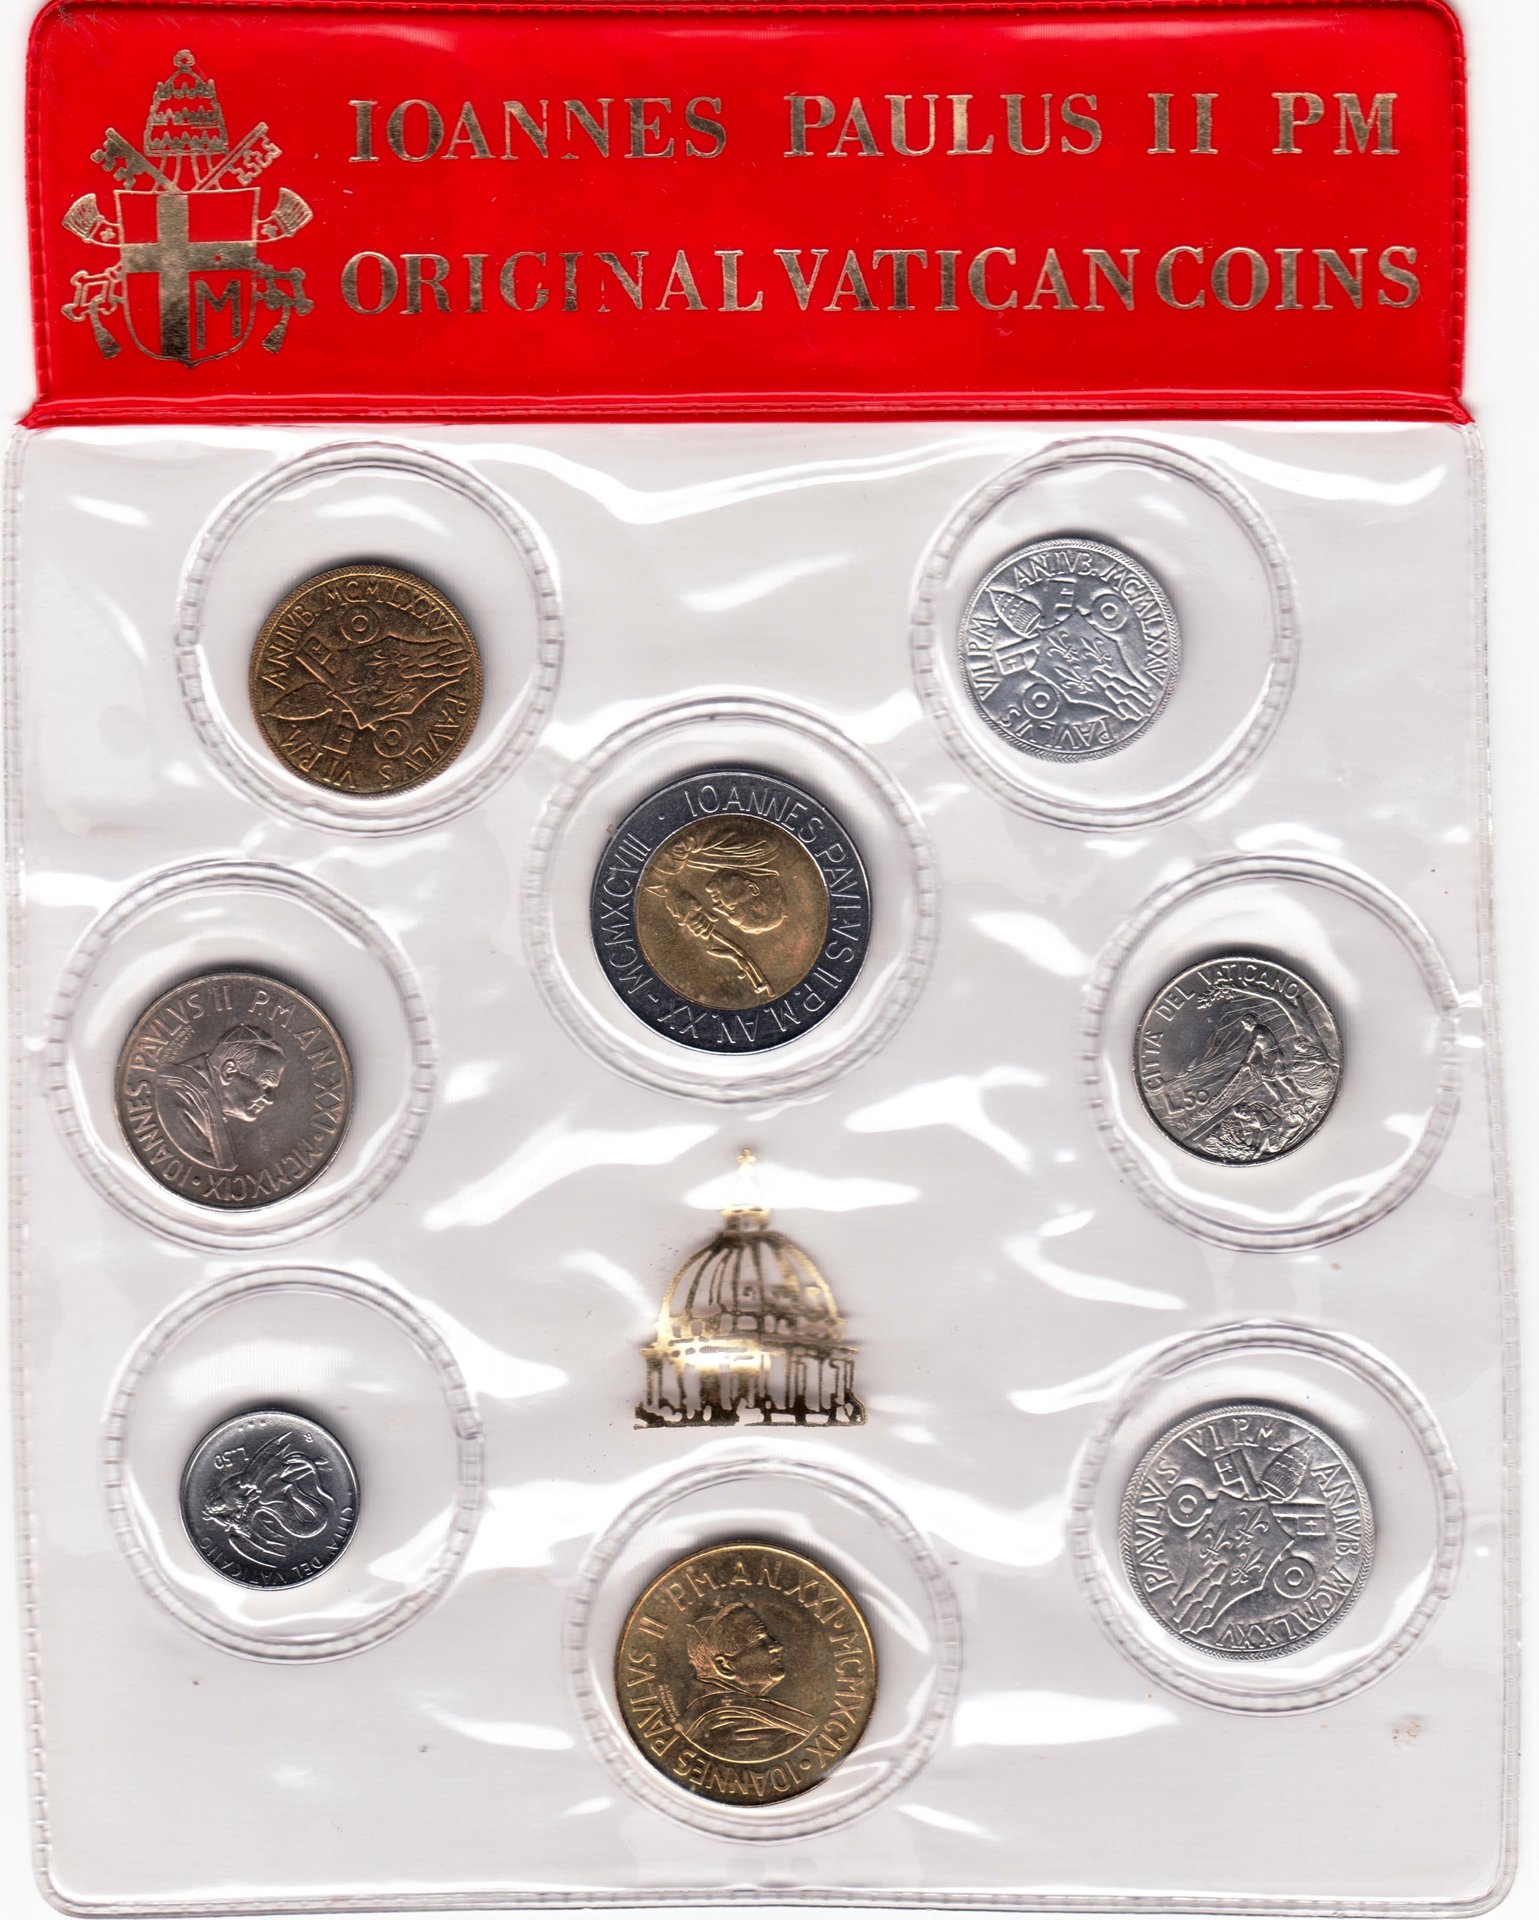 Vatcan Coin set (2).jpg